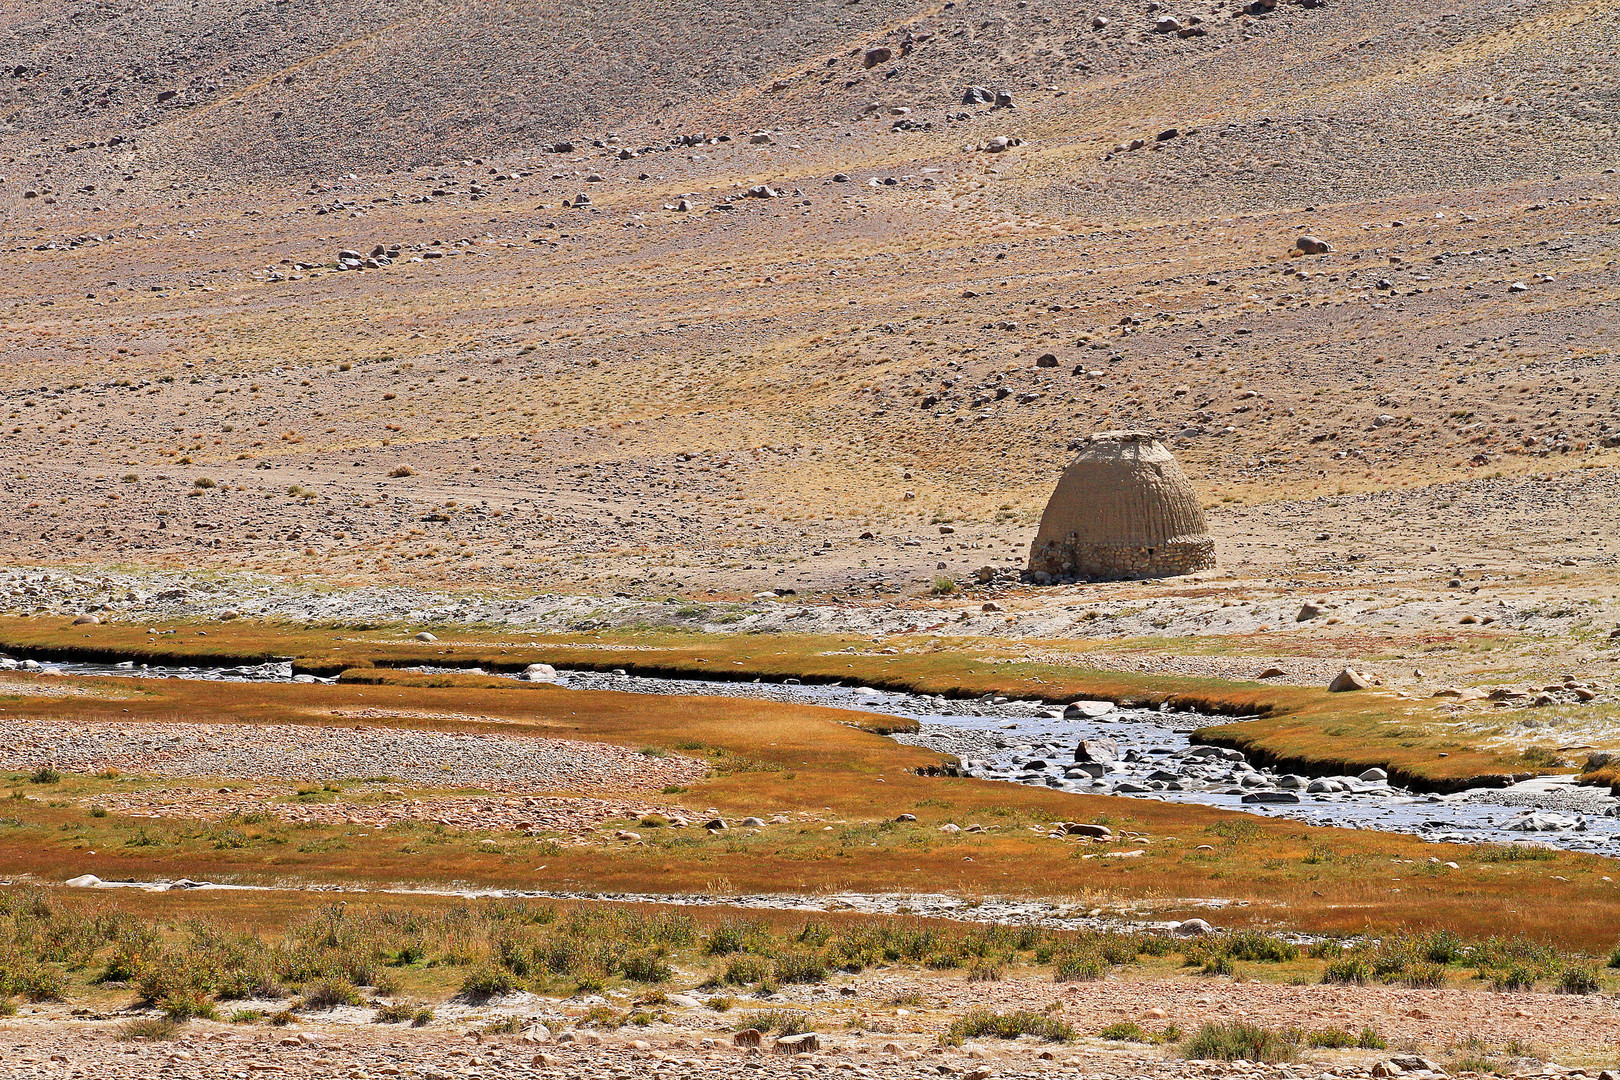 Landschaft am Kleinen Pamir, Tadschikistan/Afghanistan